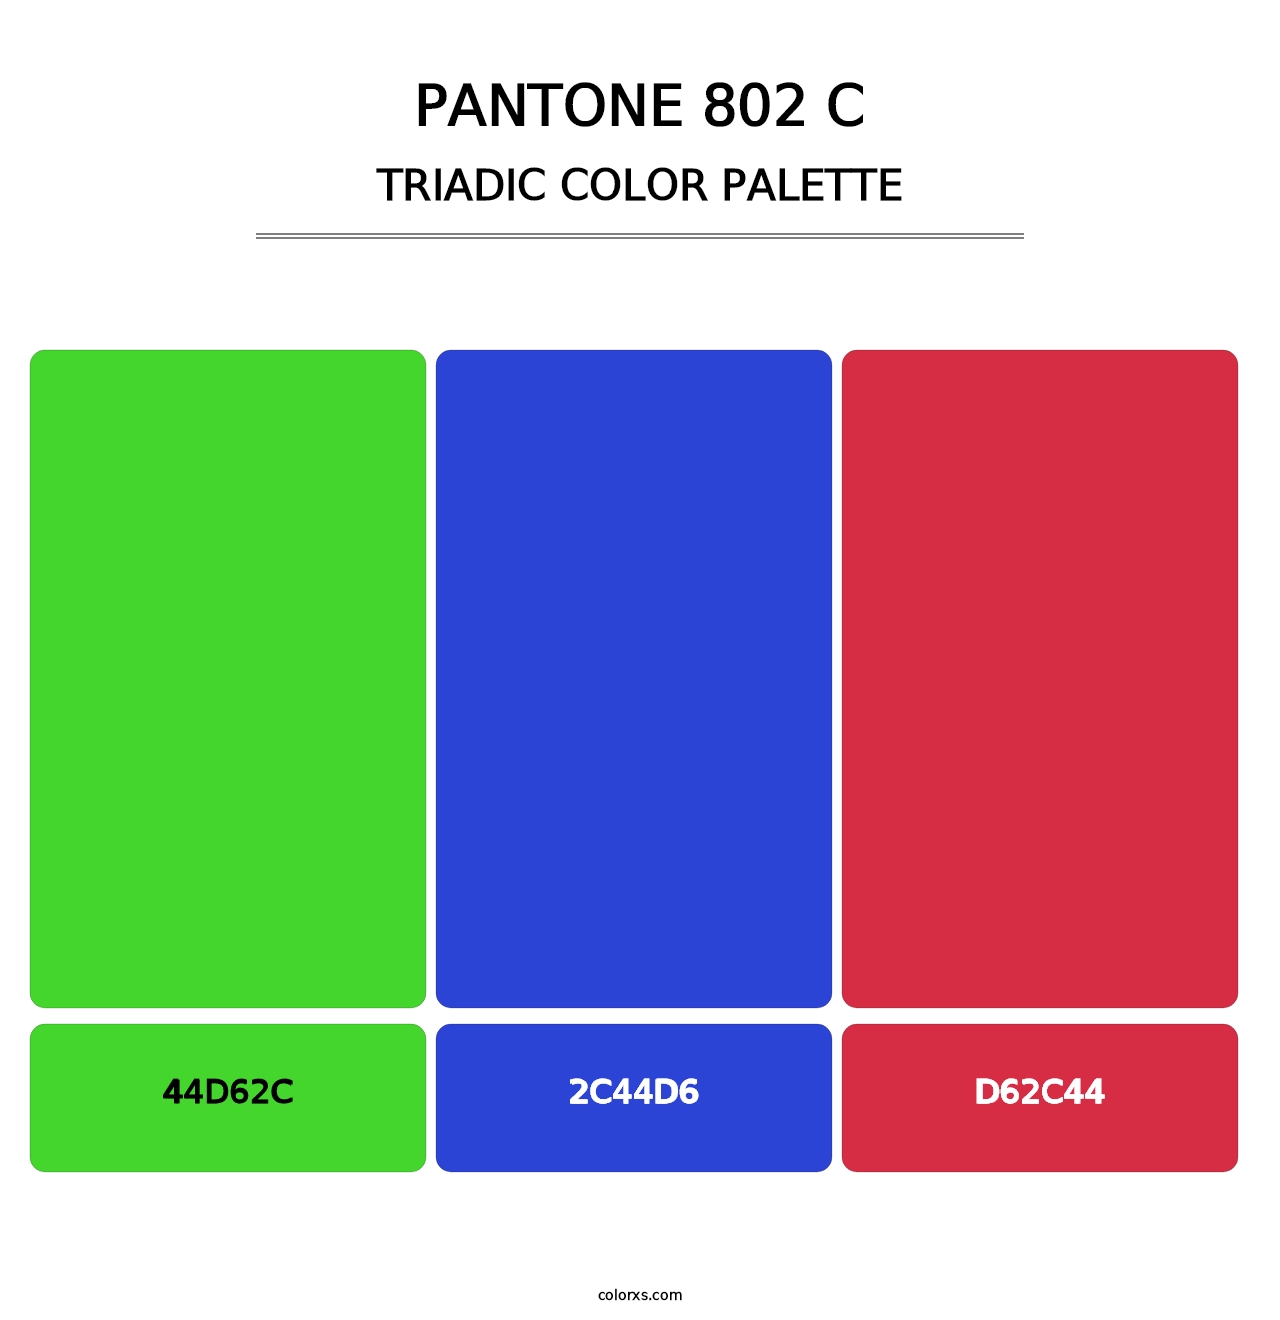 PANTONE 802 C - Triadic Color Palette